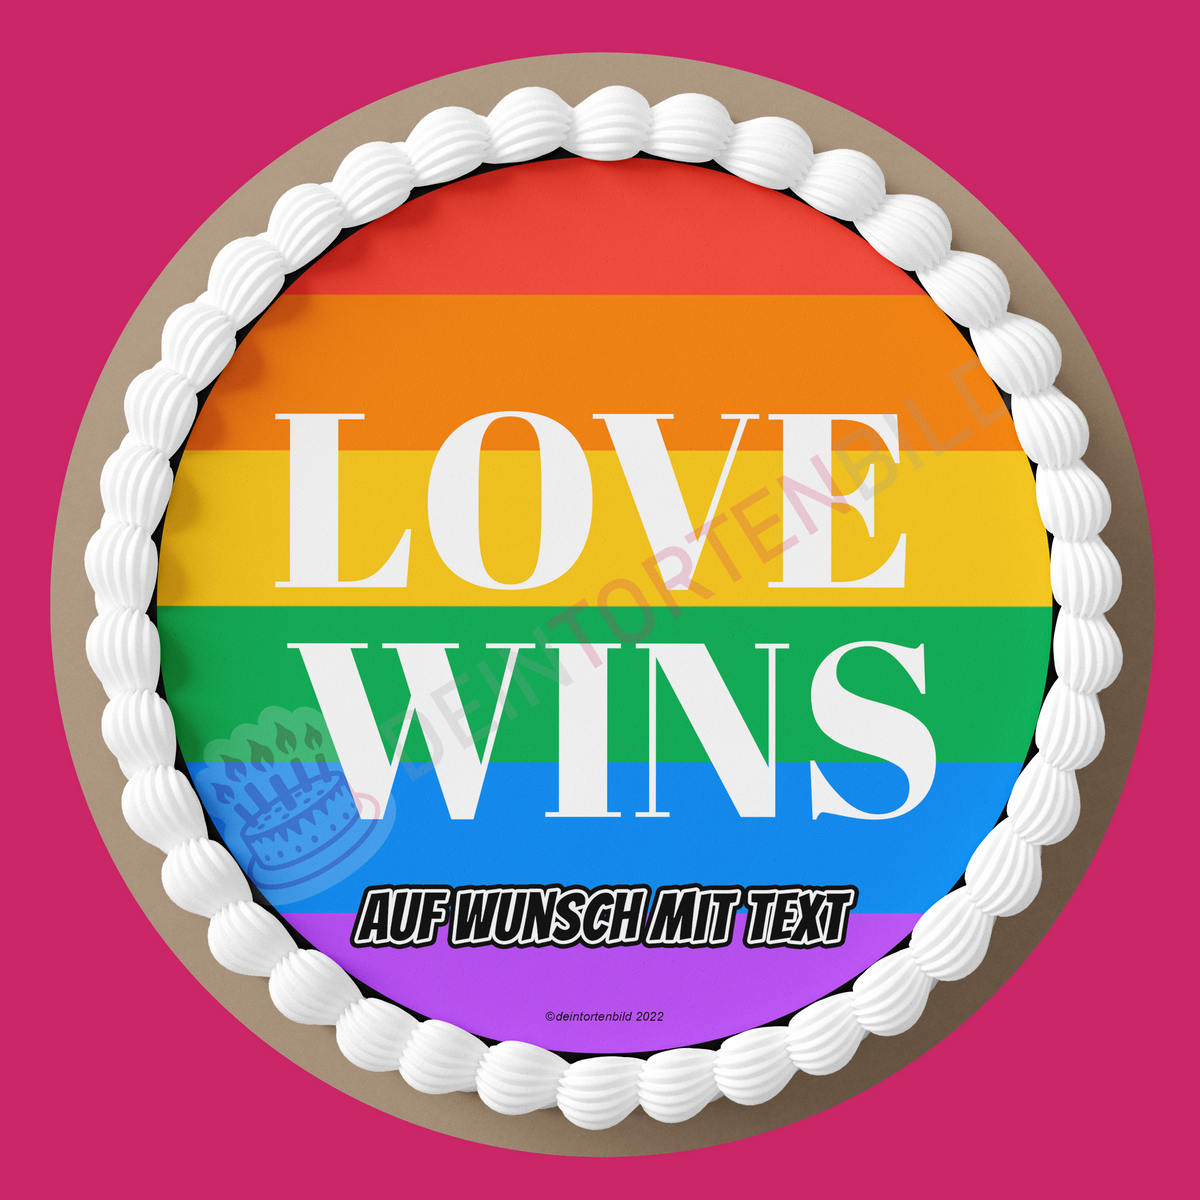 LGBTQ+ Love wins